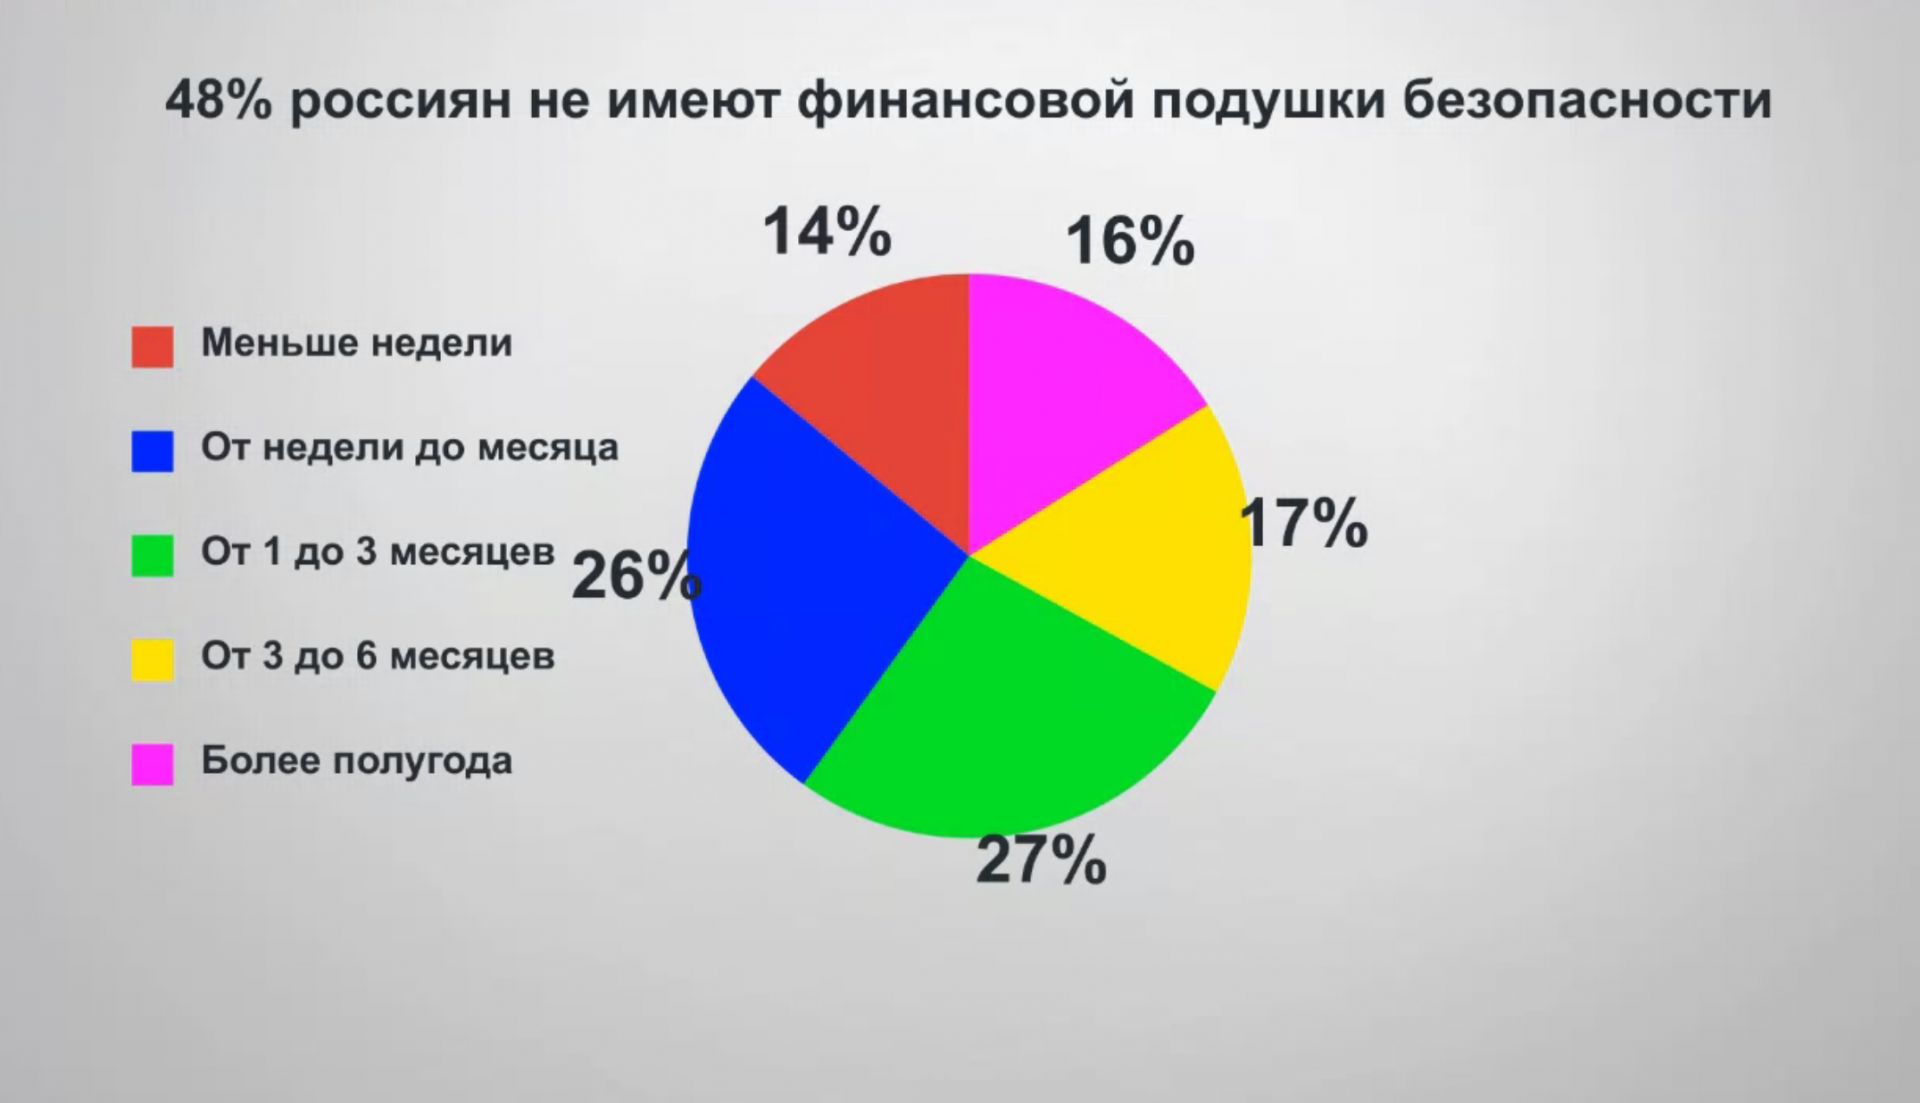 Почти у половины россиян нет финансовой подушки безопасности